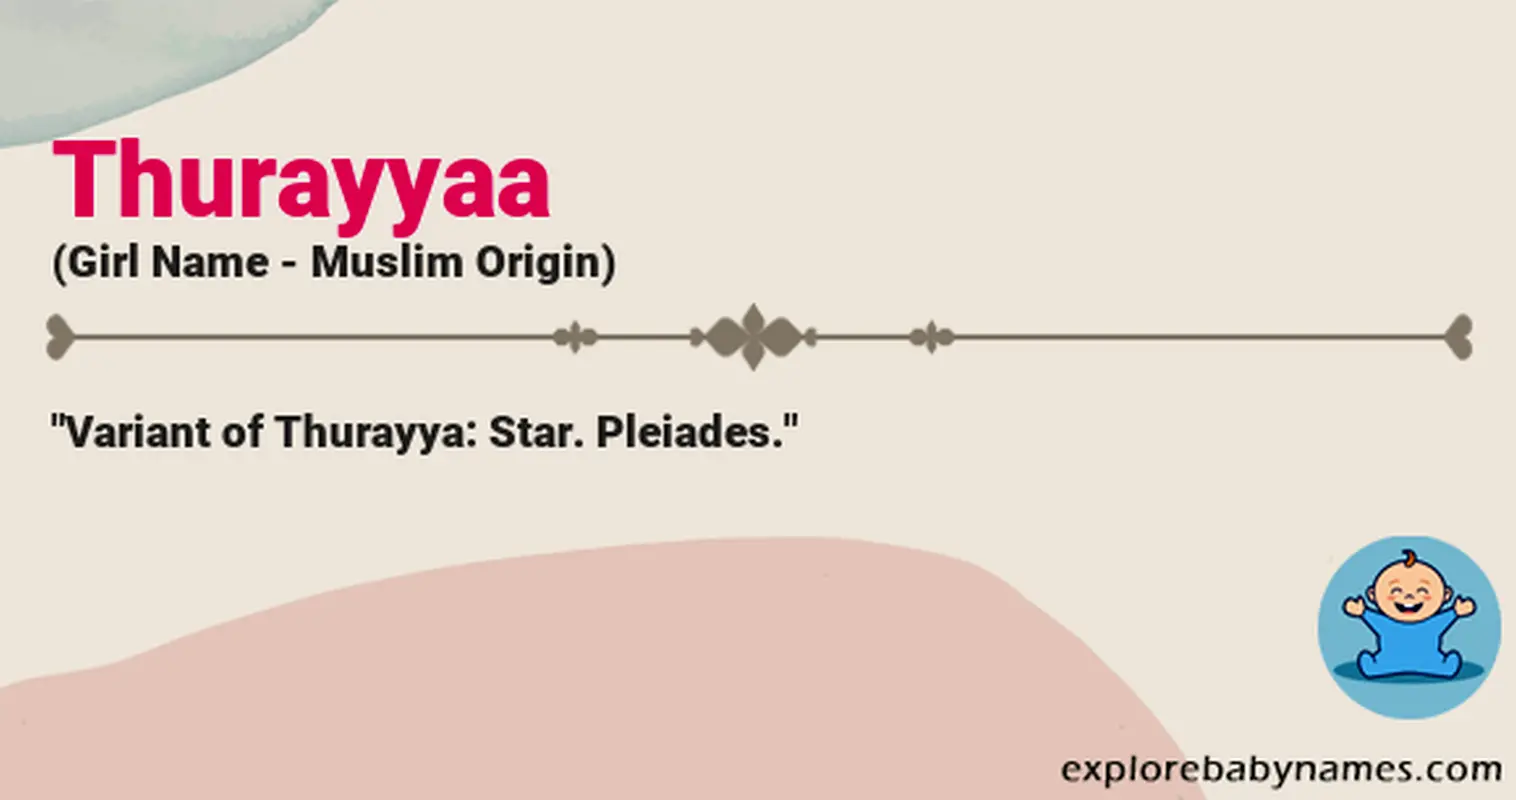 Meaning of Thurayyaa